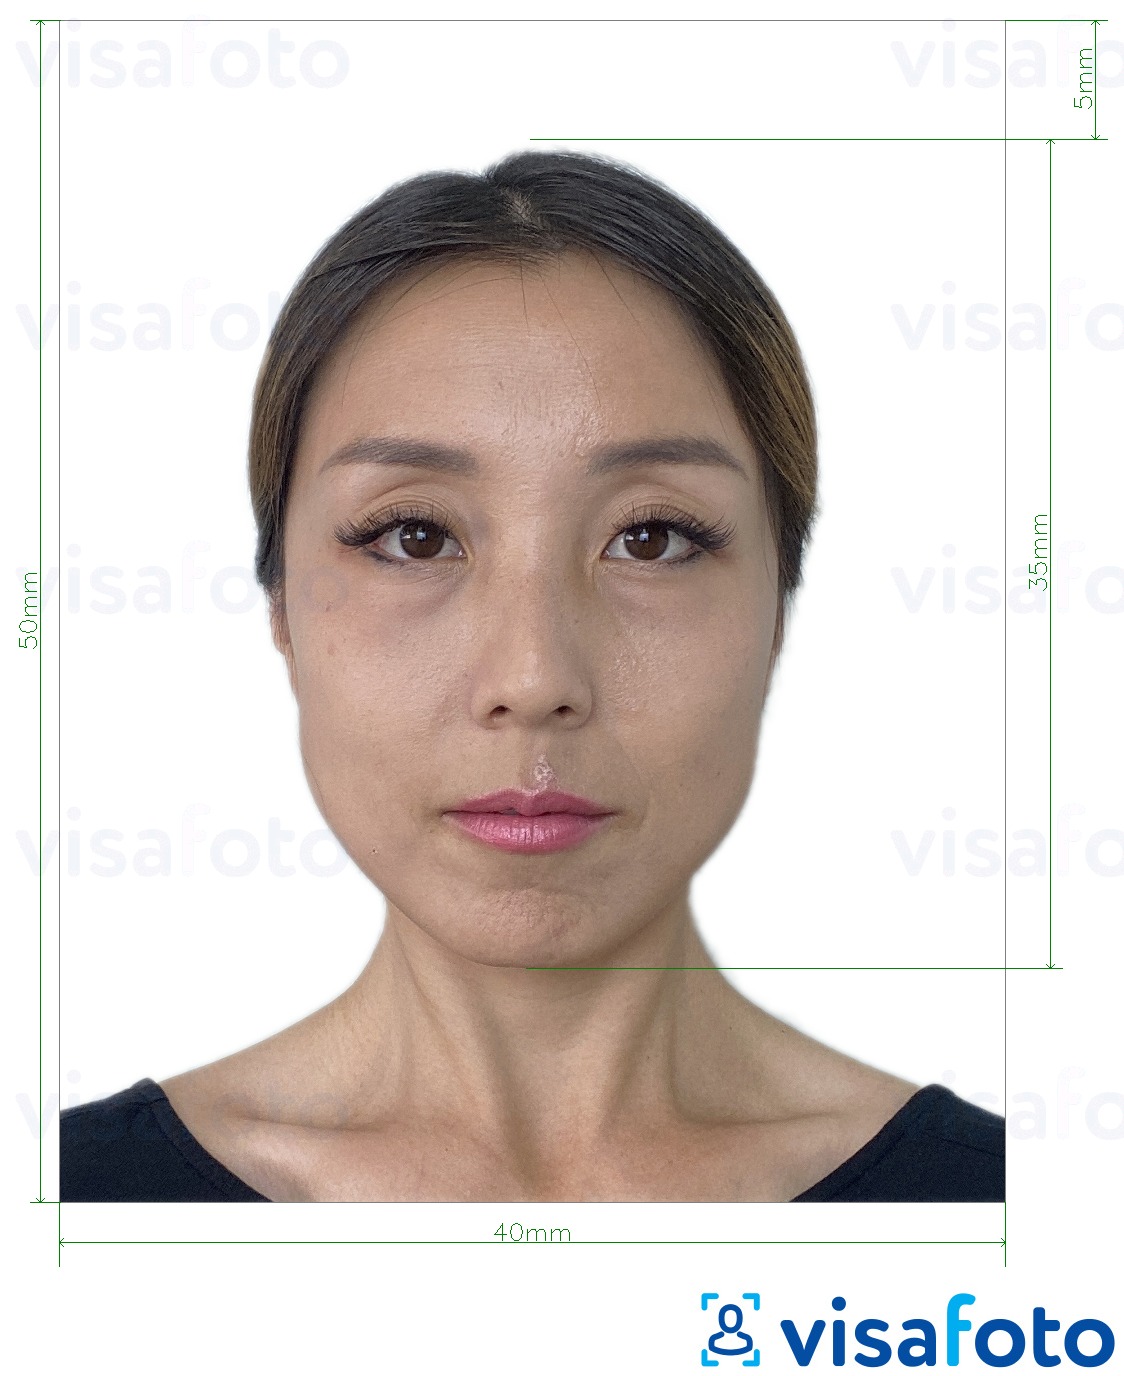 Példa a Hong Kong vízum 40x50 mm (4x5 cm) fényképre pontos méret meghatározással